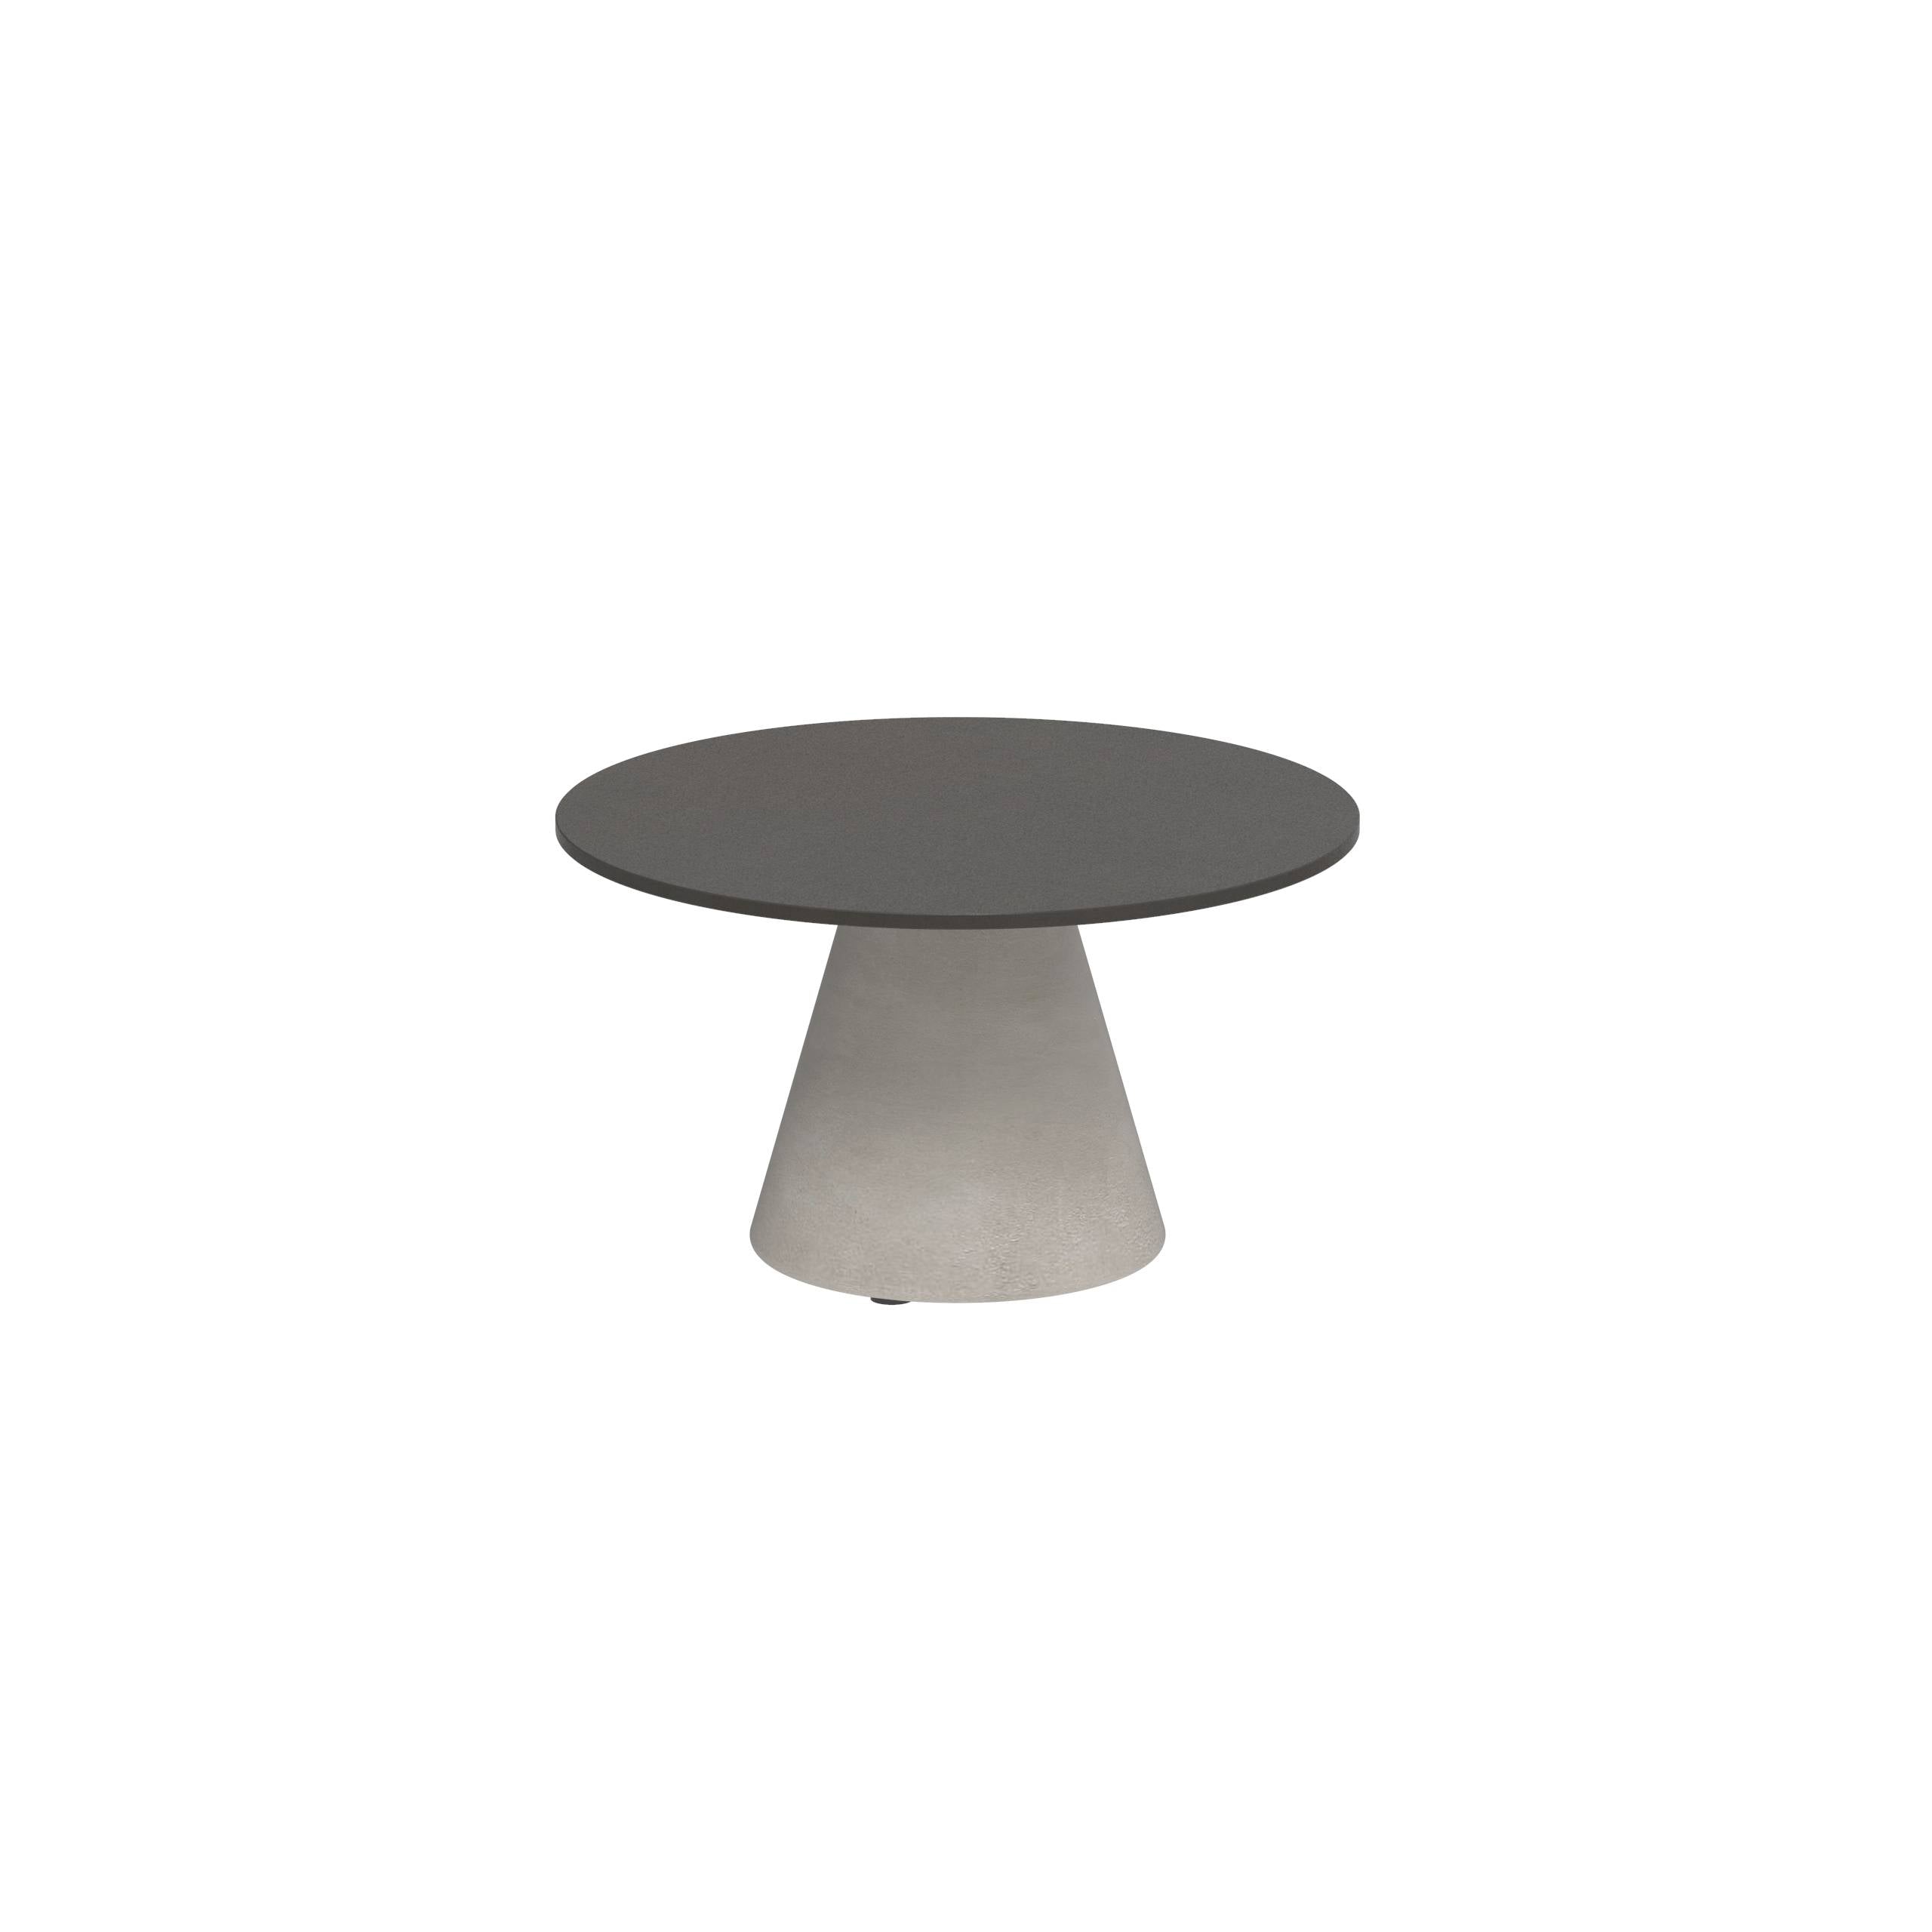 Conix Side Table Ø60cm Leg Concrete Cement Grey - Table Top Lavastone Dusk